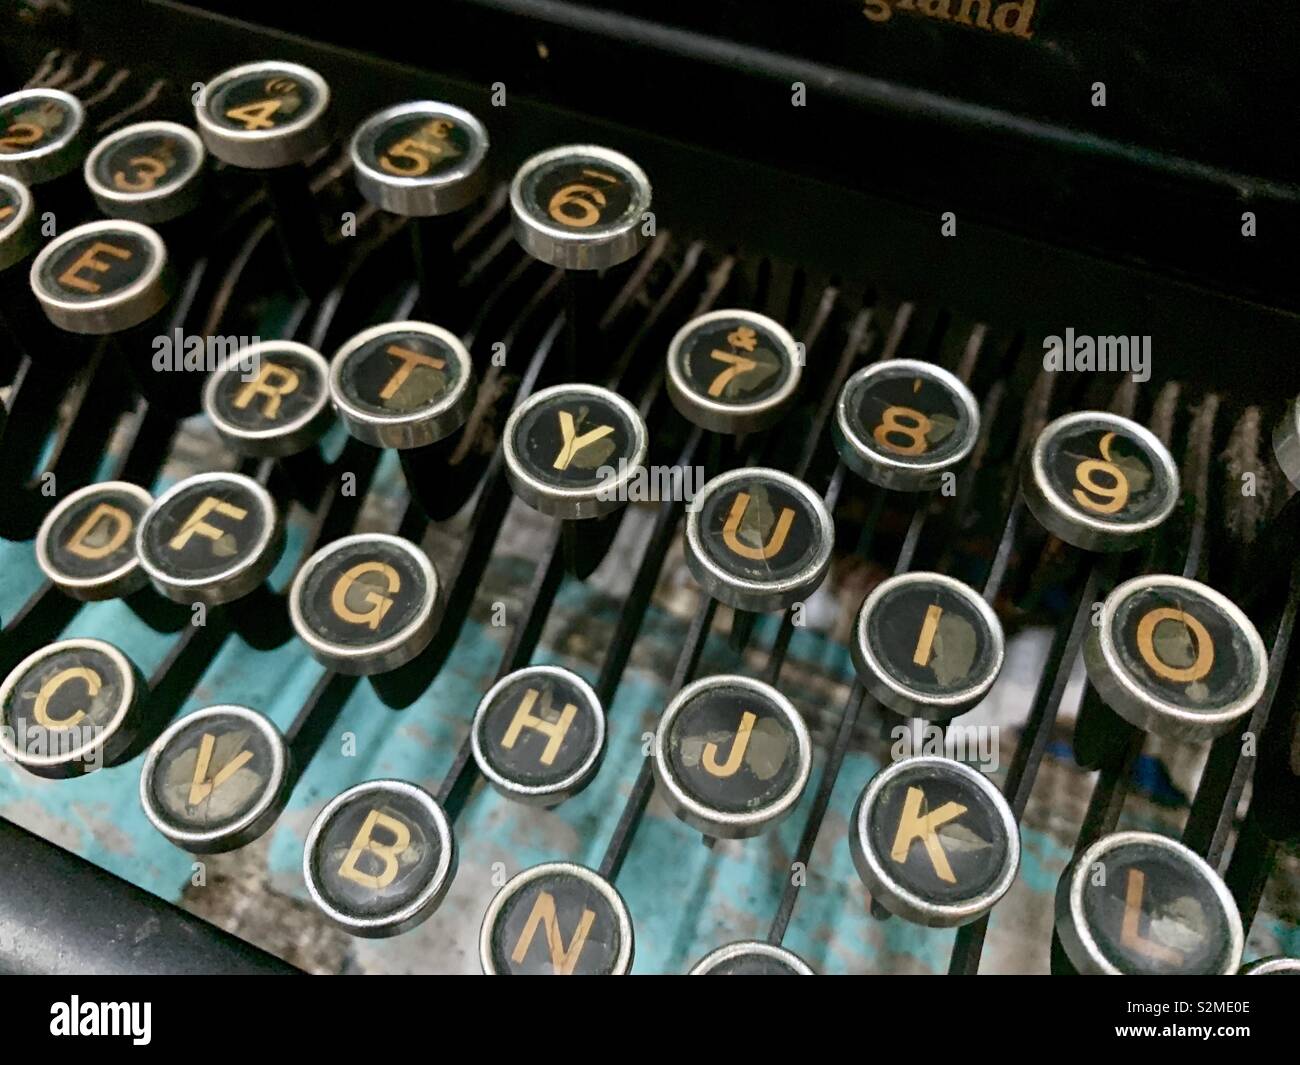 Old Typewriter Keyboard Stock Photo